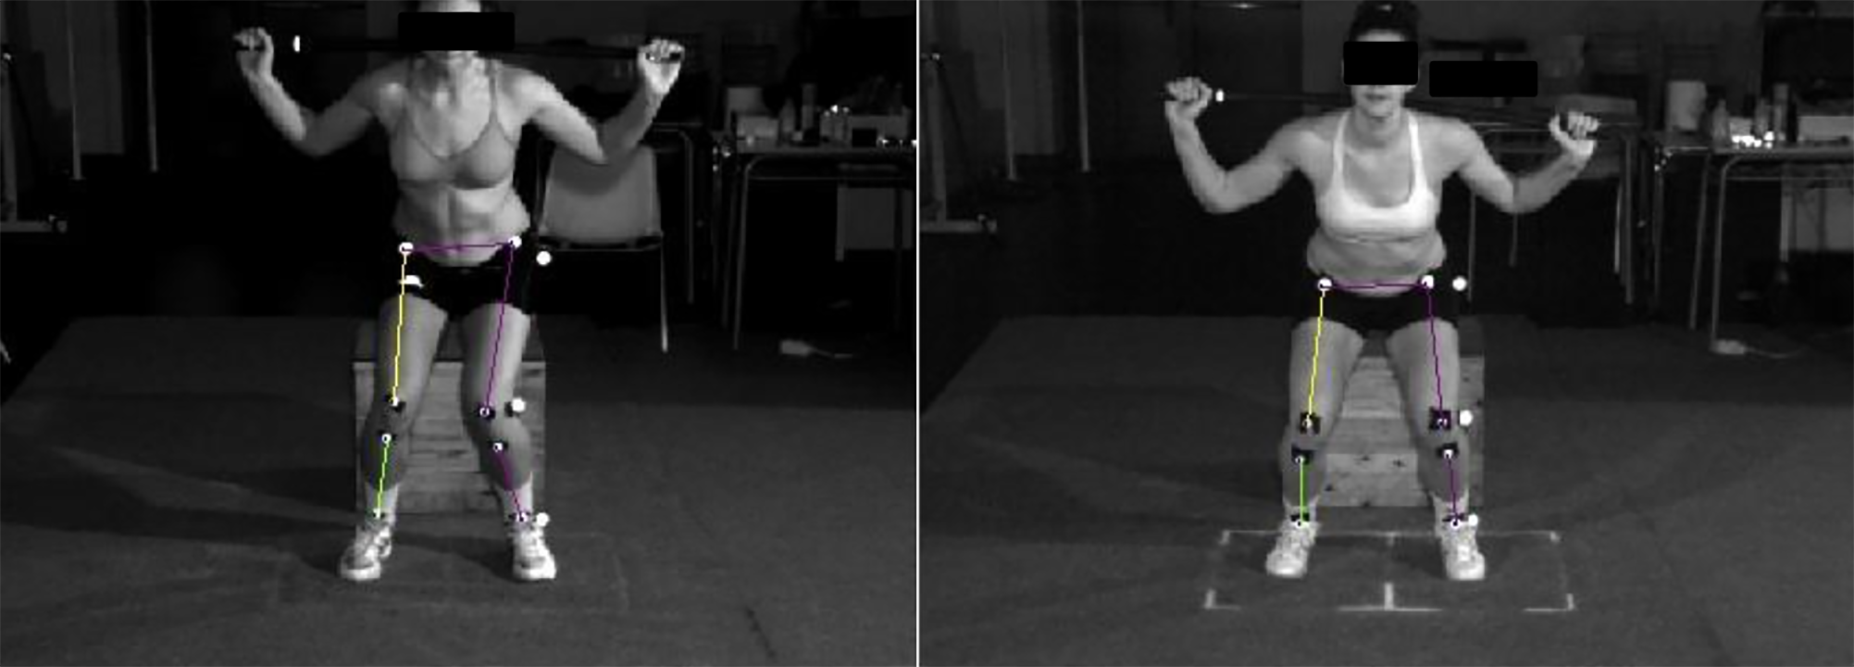 Exemple de dèficit de control del genoll (A) i bon control de l'aterratge (B) en un test de laboratori.